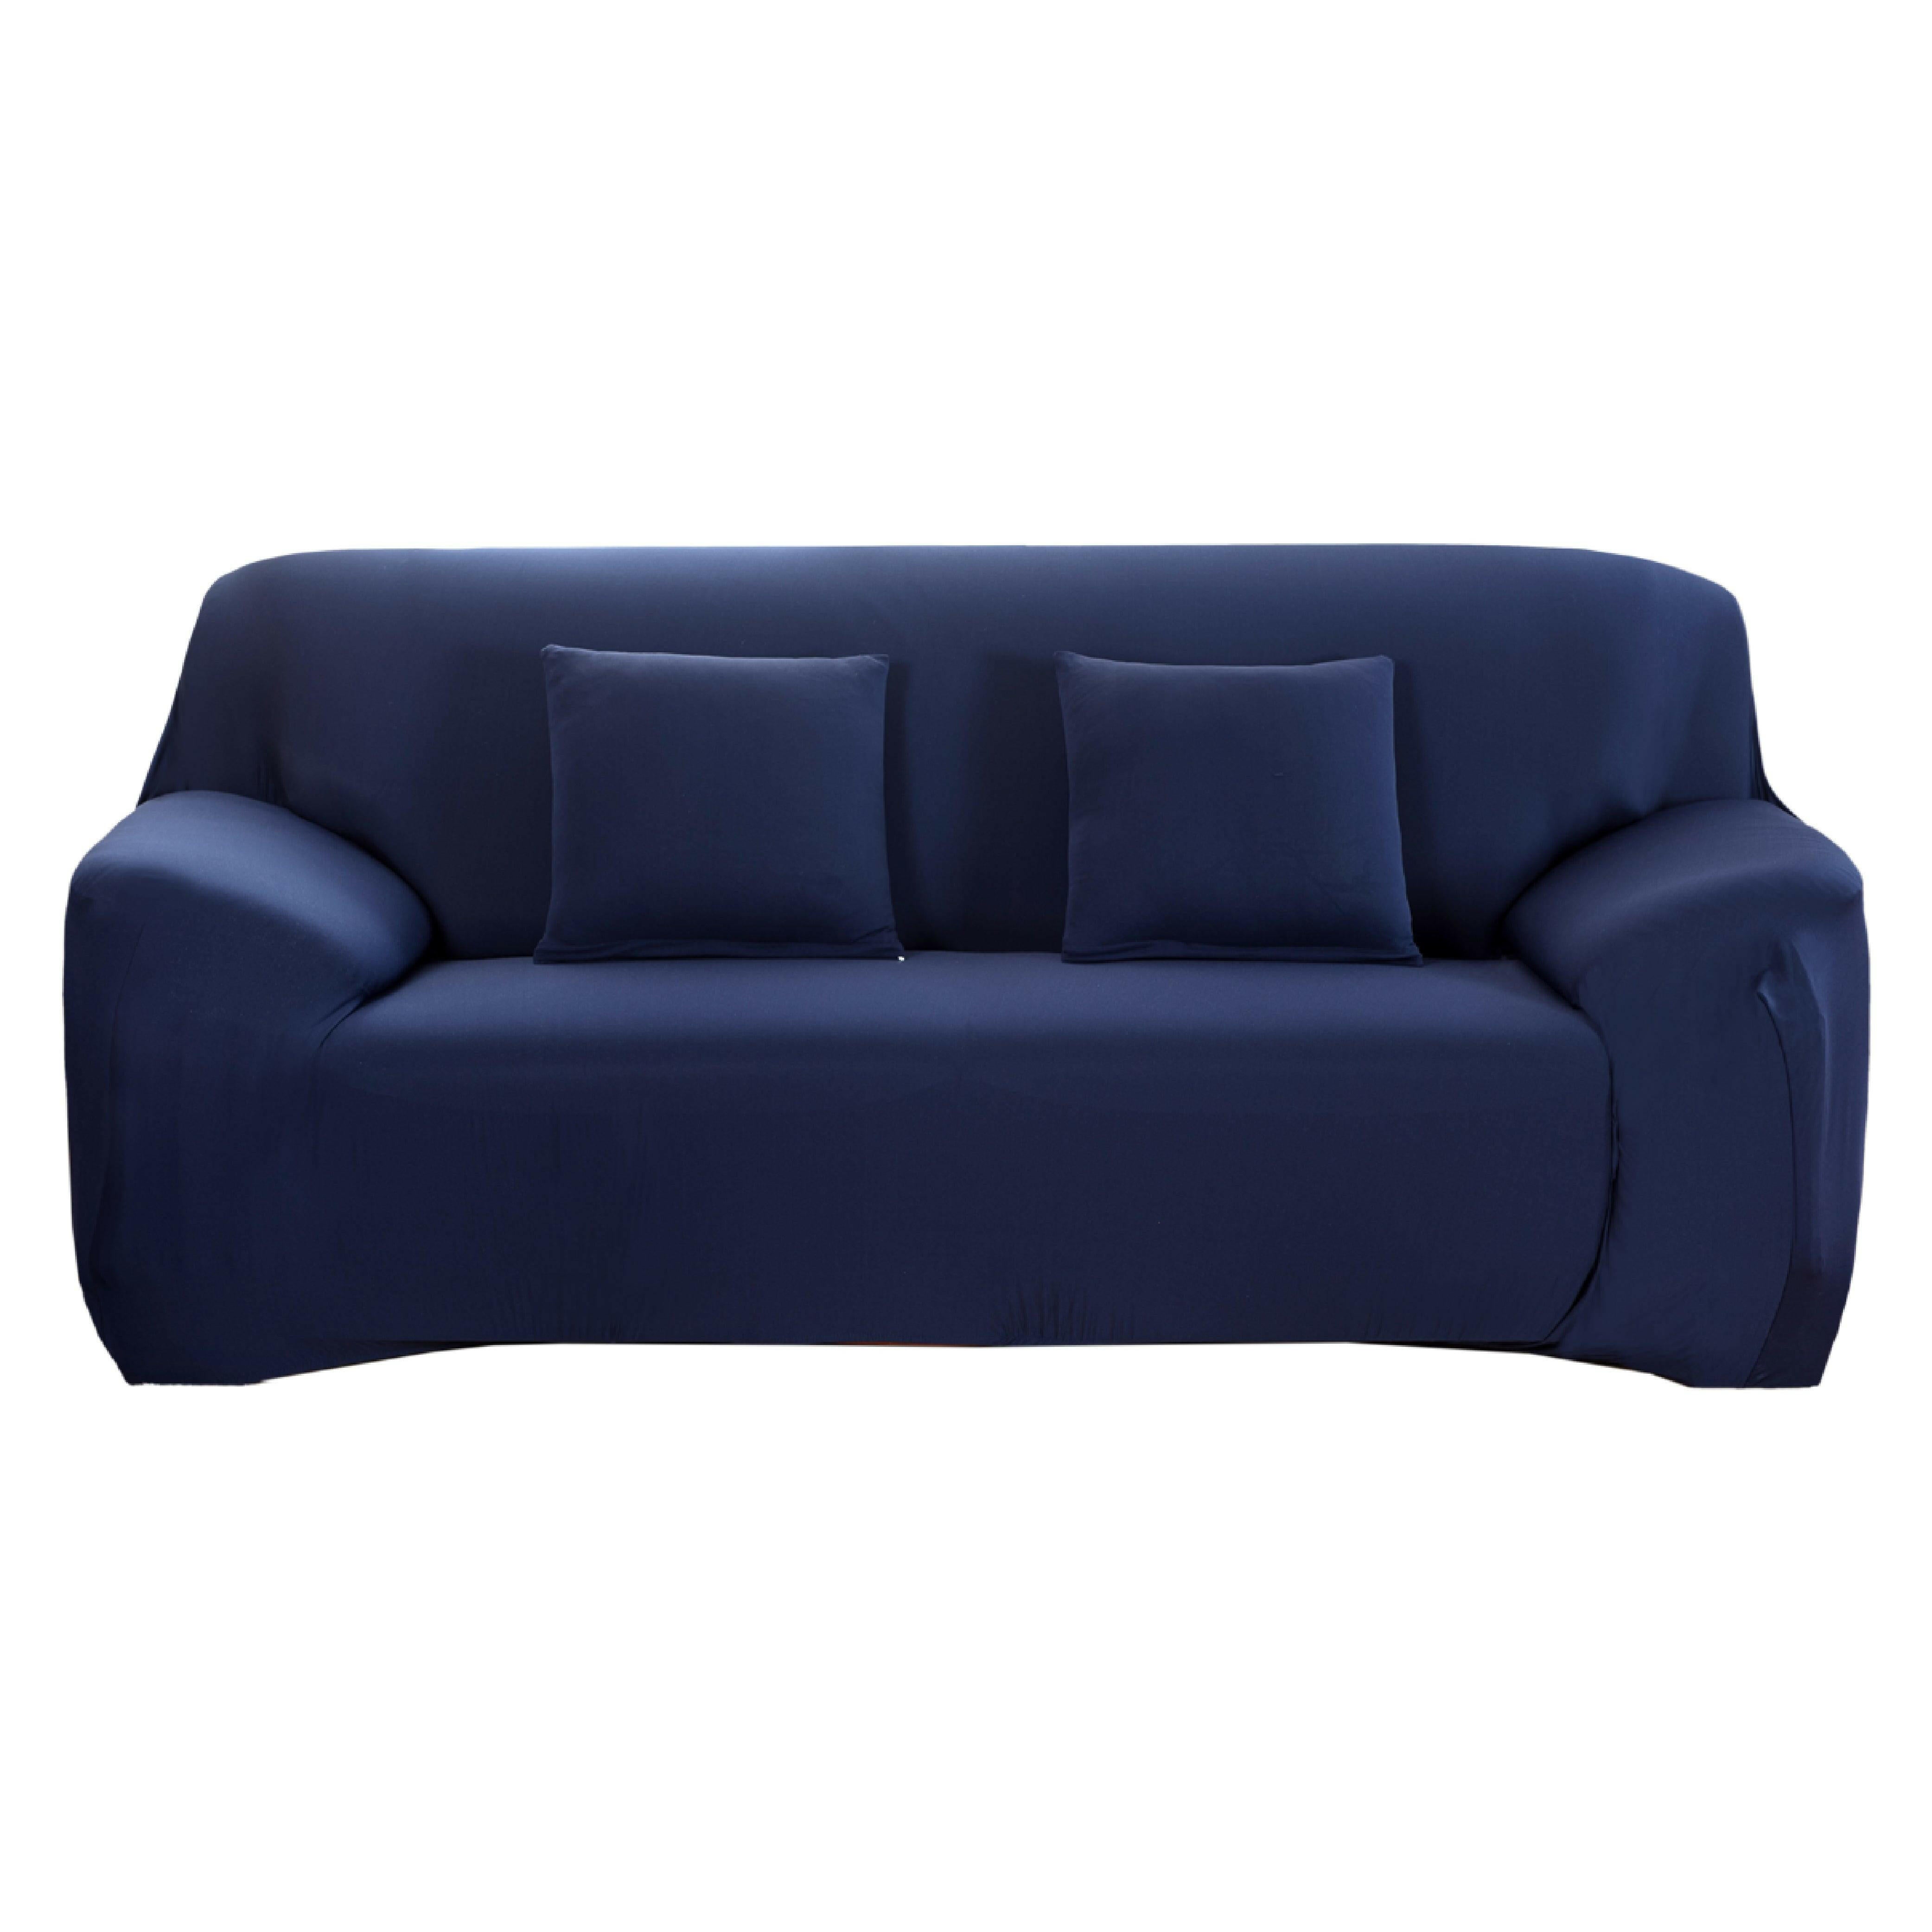 Hyper Cover Stretch Sofa Cover Plain Colour Navy | Sofa Covers | Brilliant Home Living